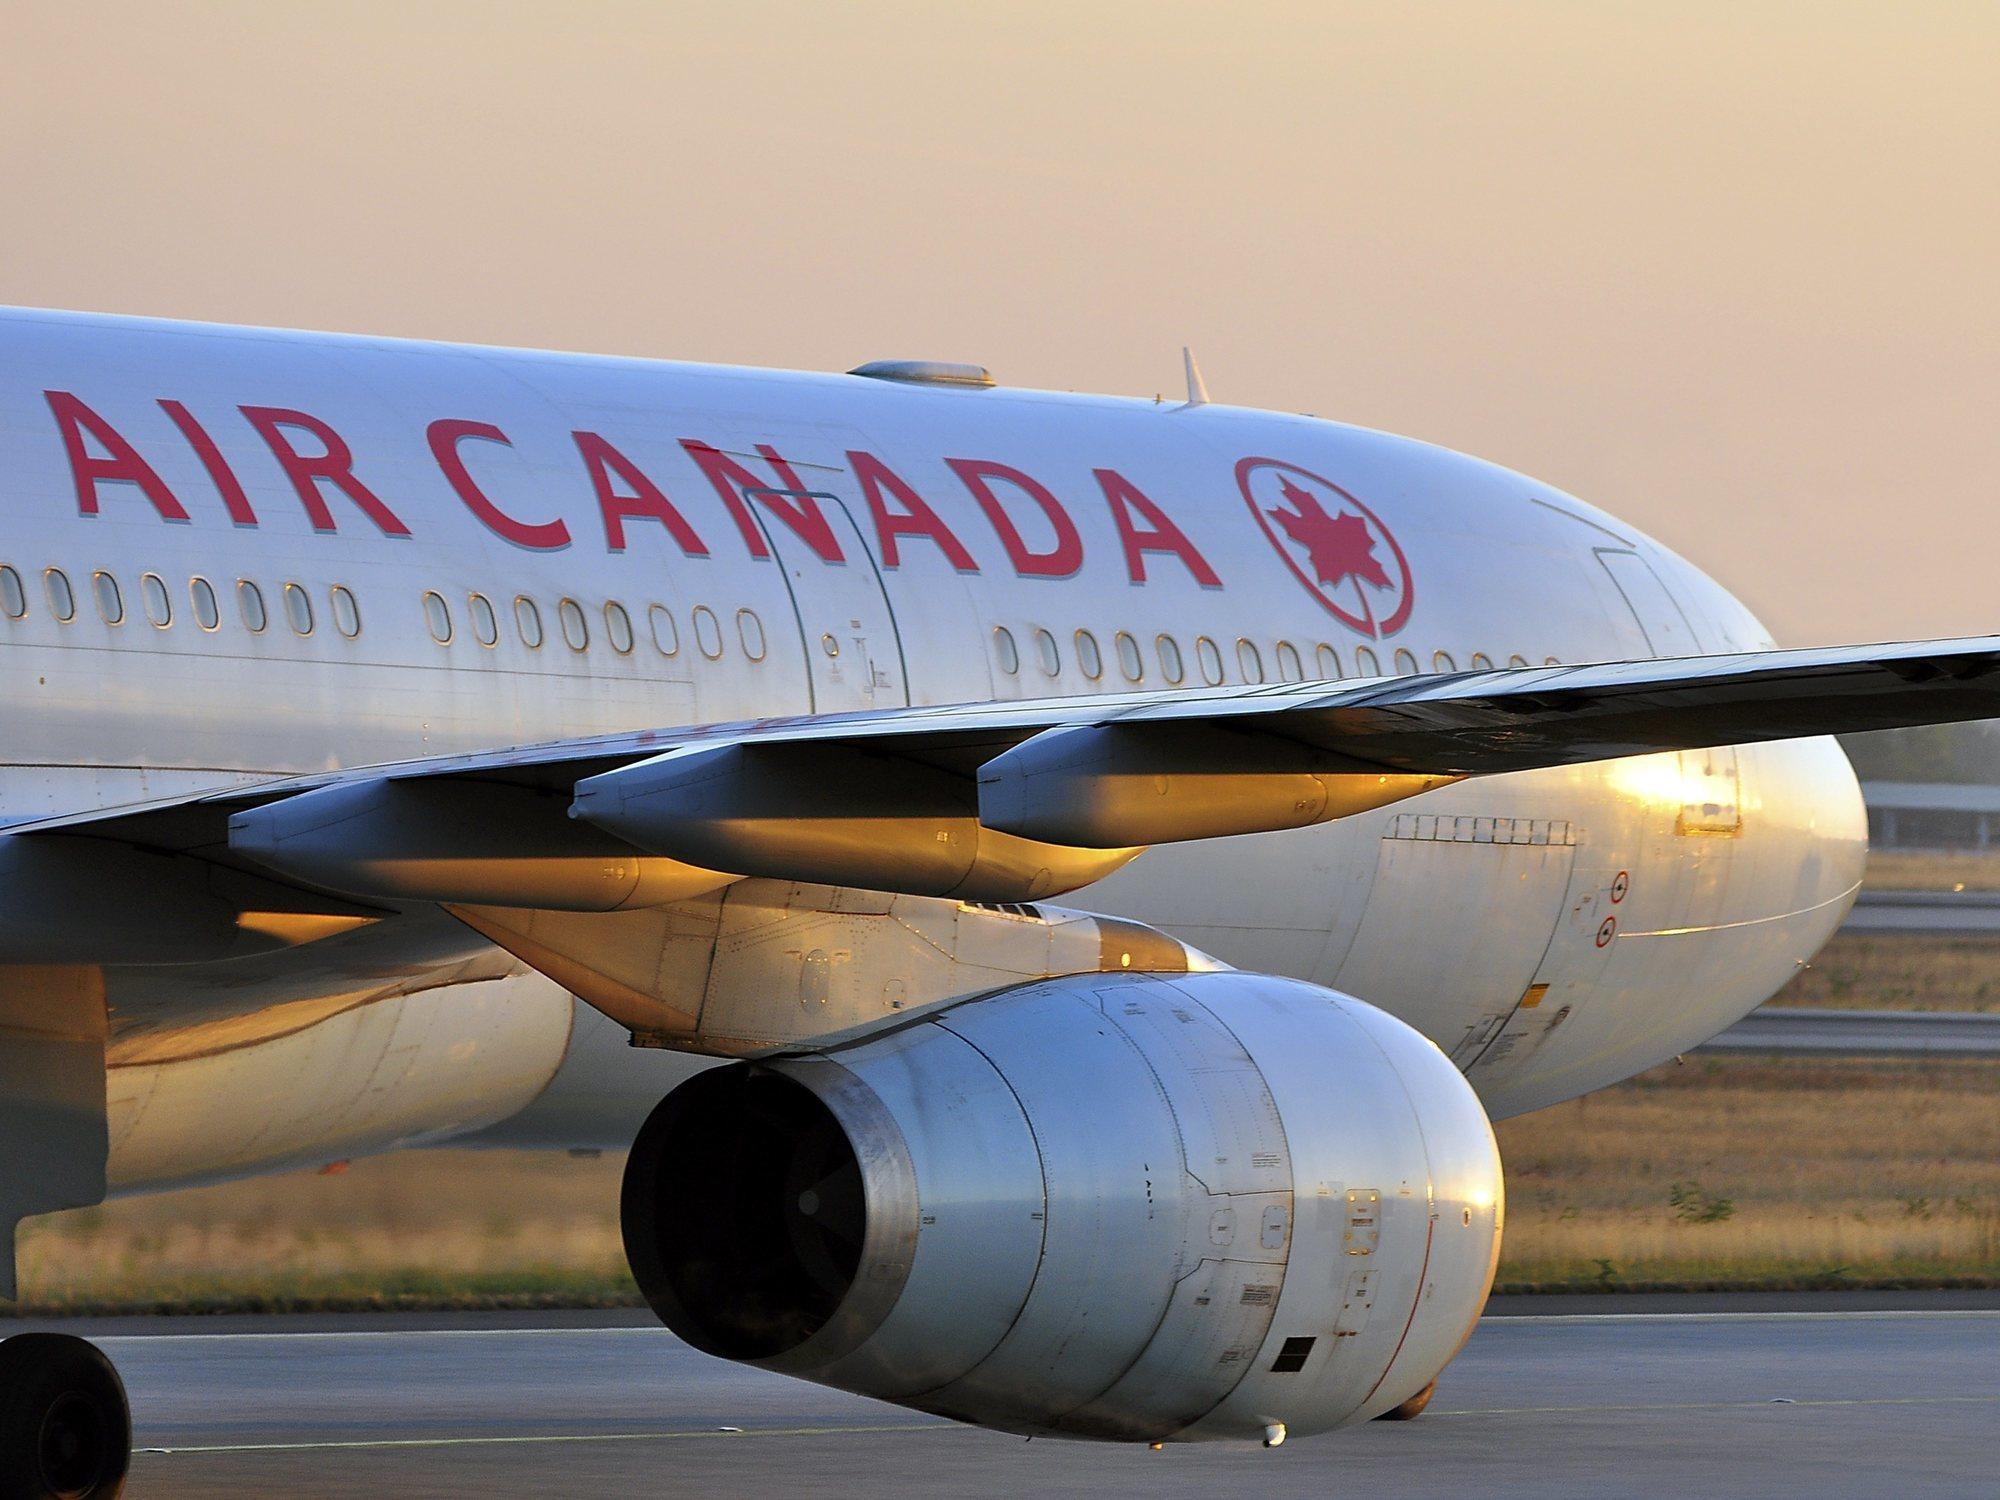 Avión de Air Canada